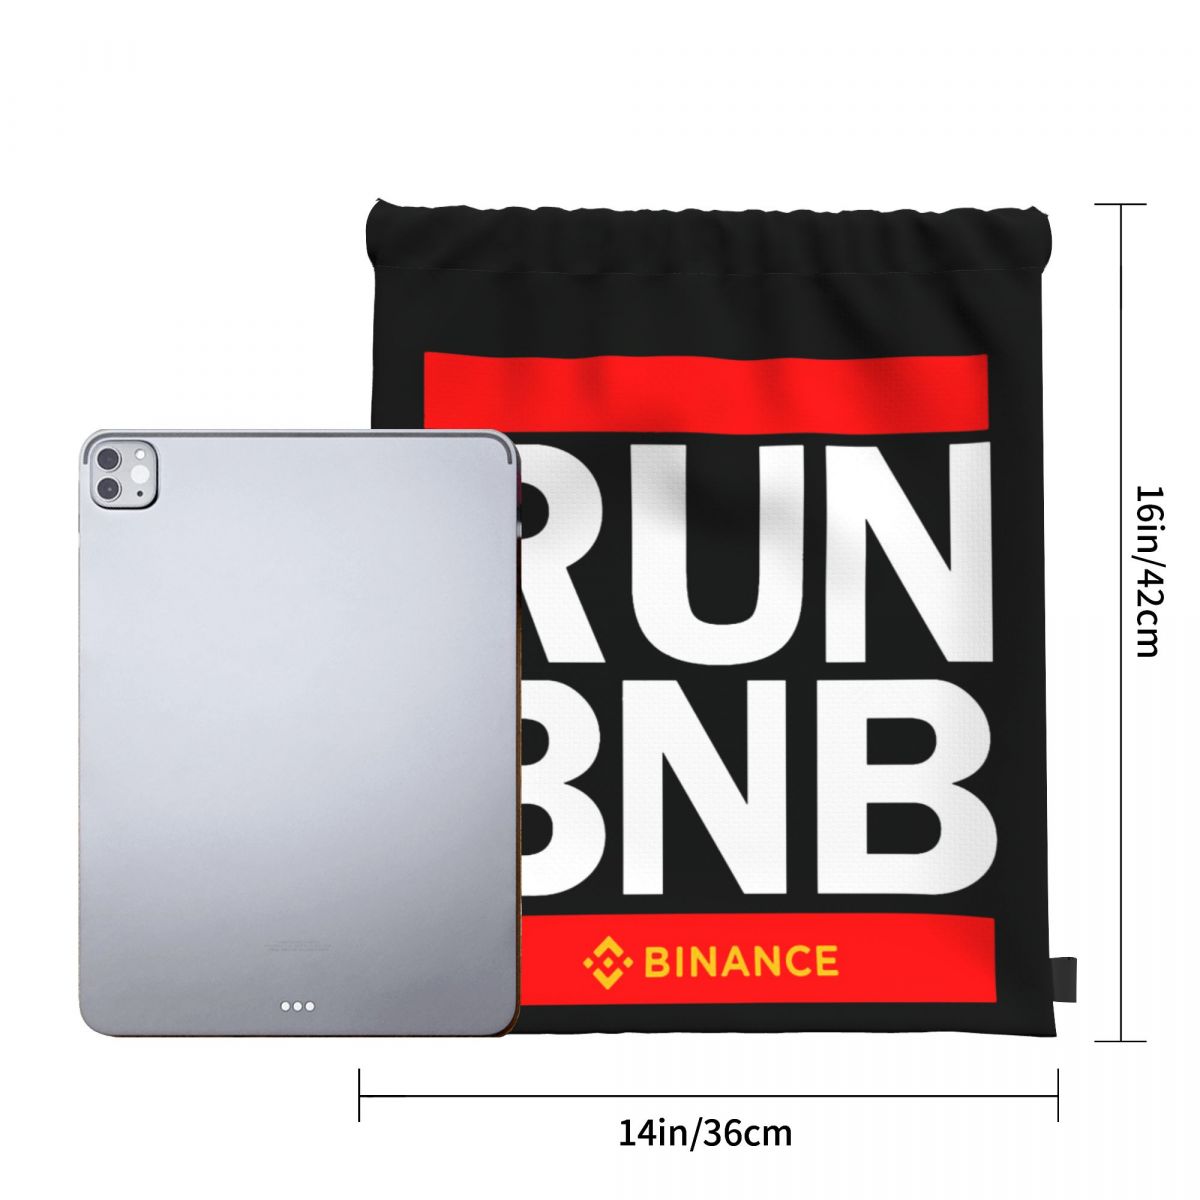 Run BNB Binance coin bag